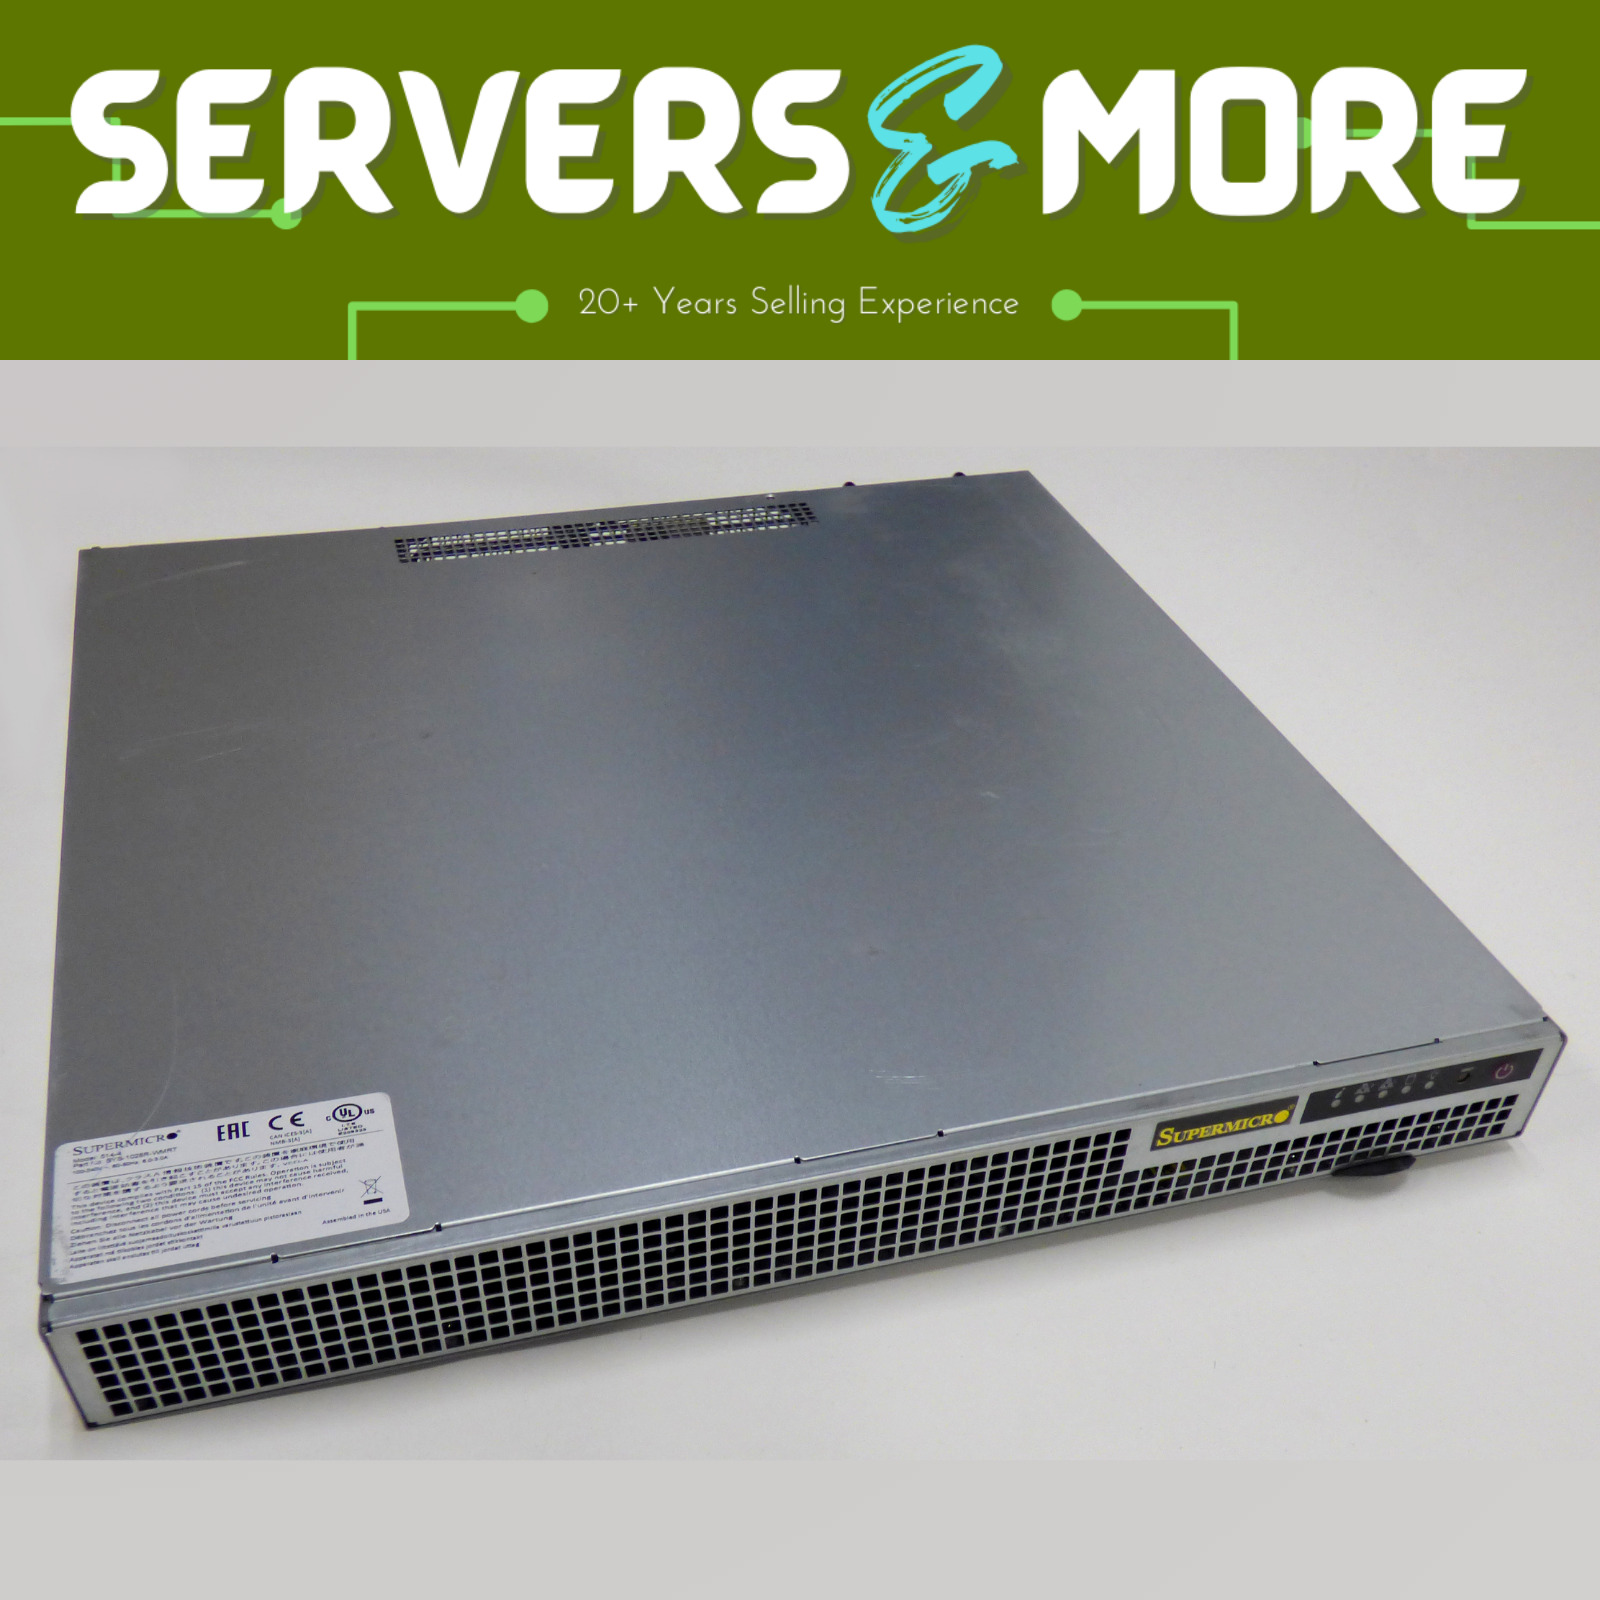 Supermicro 1U Firewall Server  Xeon E3-1270v3 32GB ECC RAM 6x10G NICs Dual Power